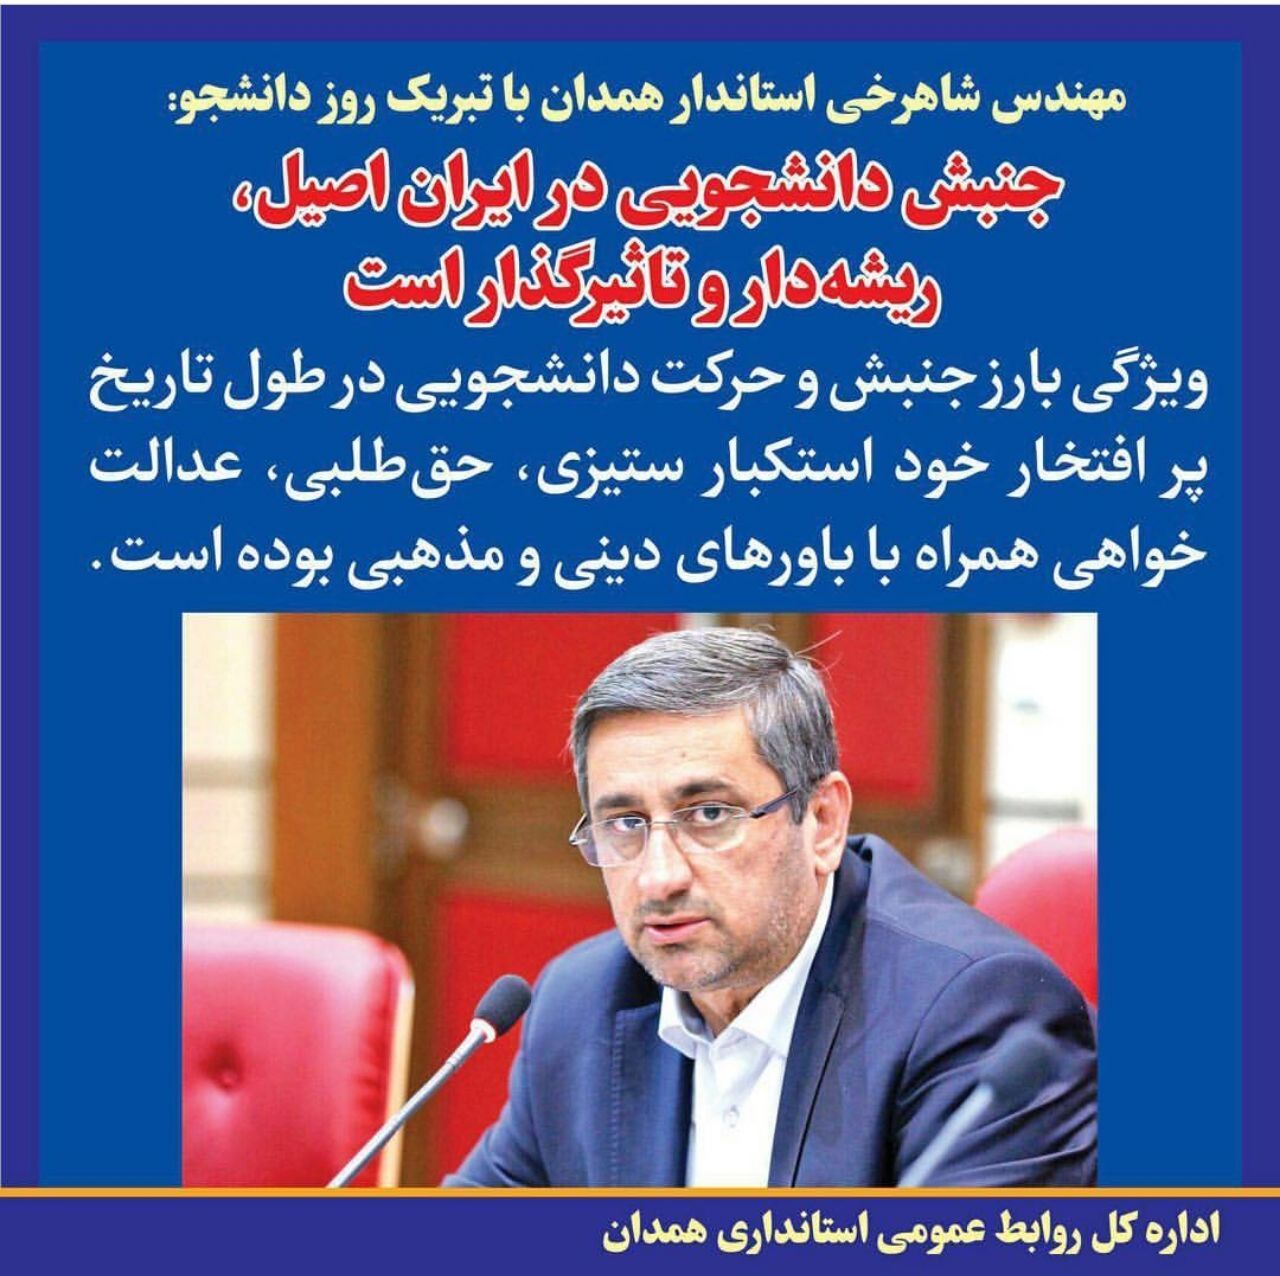 پیام استاندار همدان به مناسبت روز دانشجو:جنبش دانشجویی در ایران اصیل، ریشه دار و تاثیر گذار است